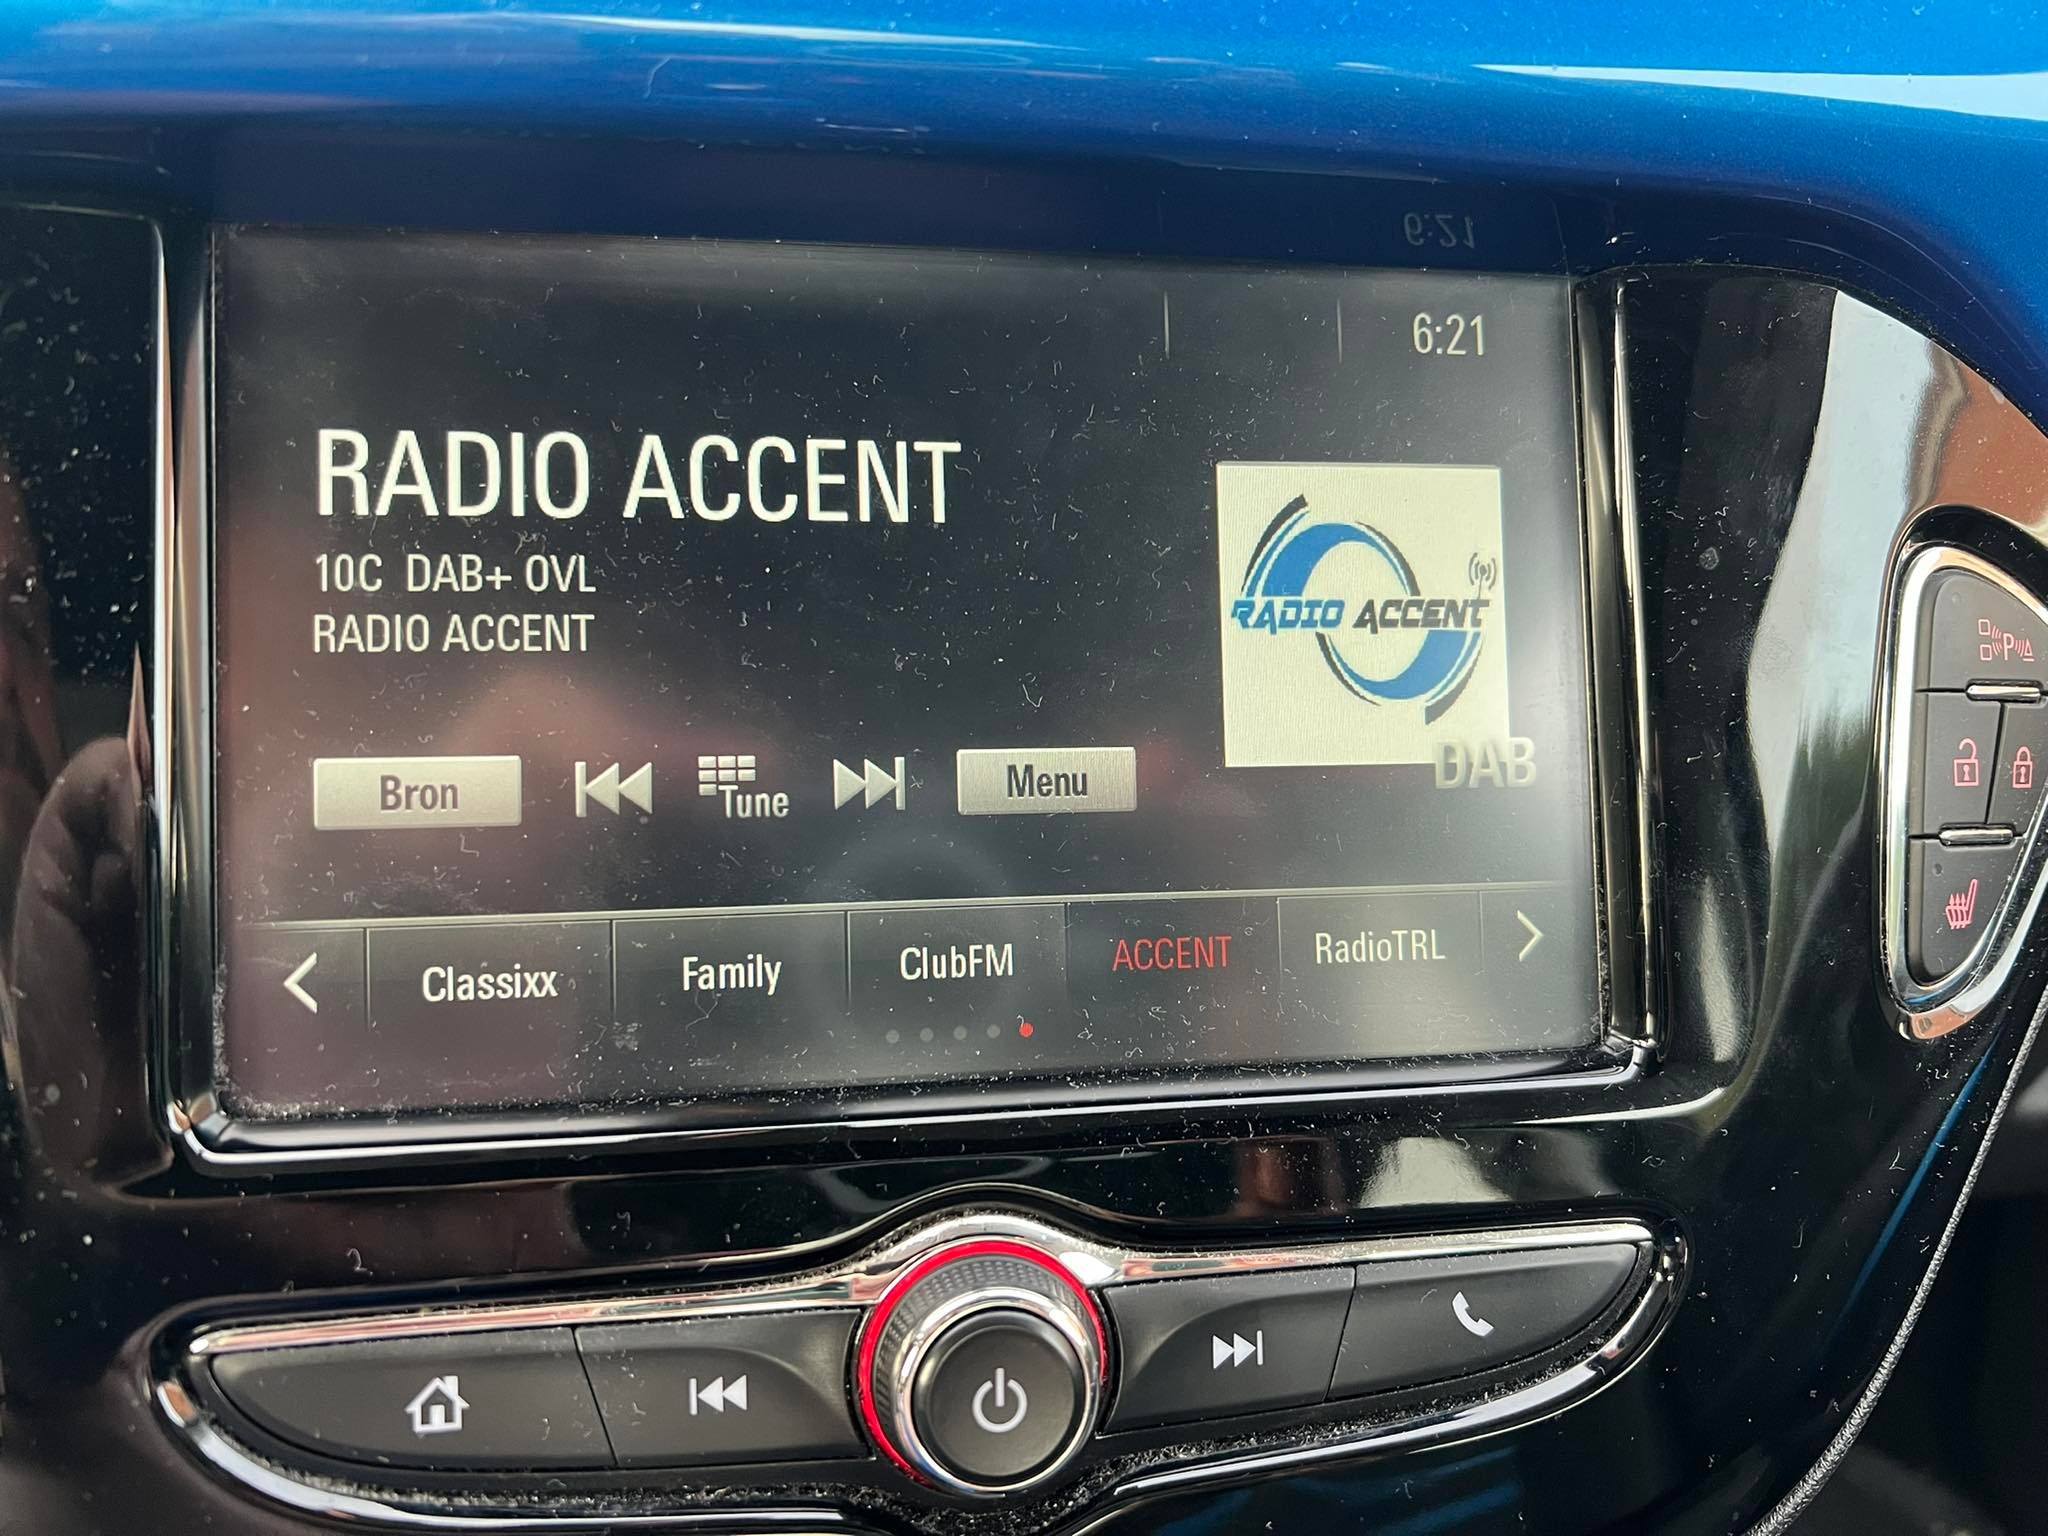 Radio Accent nu ook via DAB+